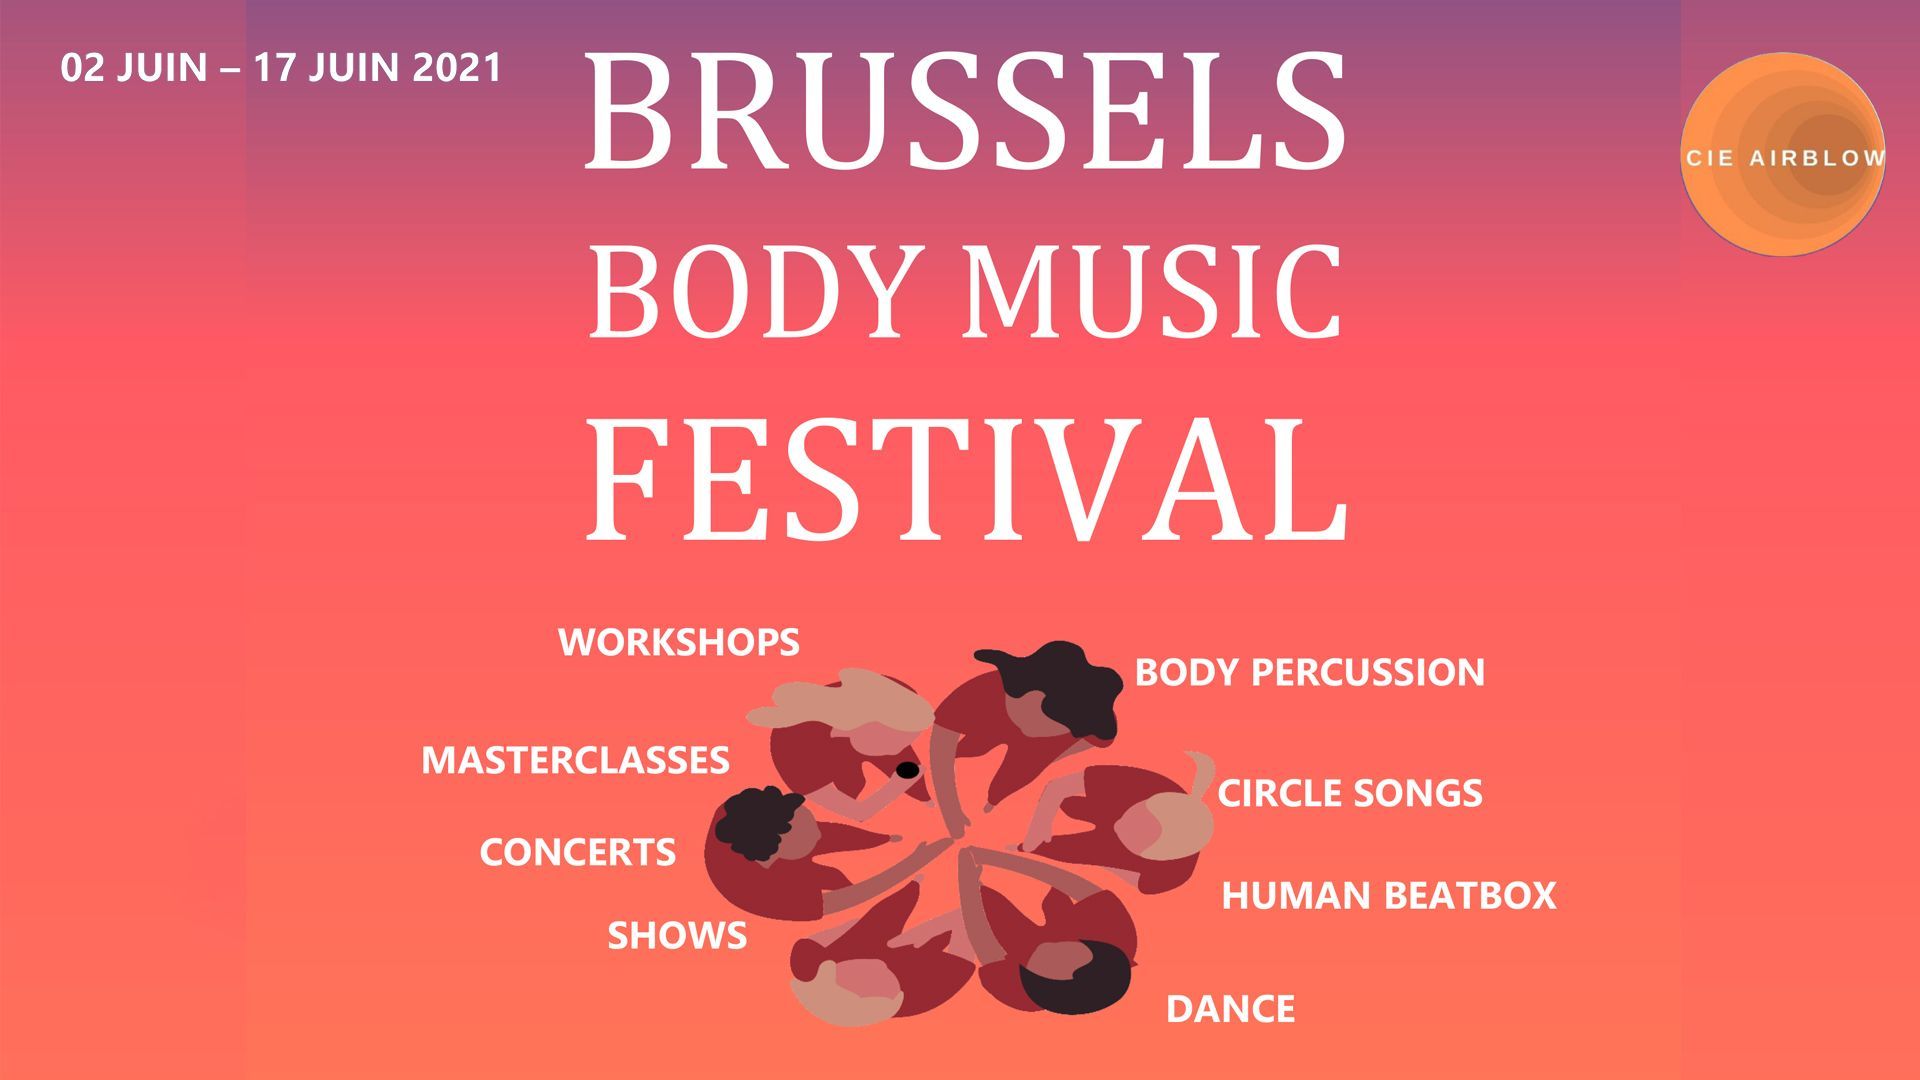 Le Brussels Body Music Festivalte fait découvrir des artistes hors du commun